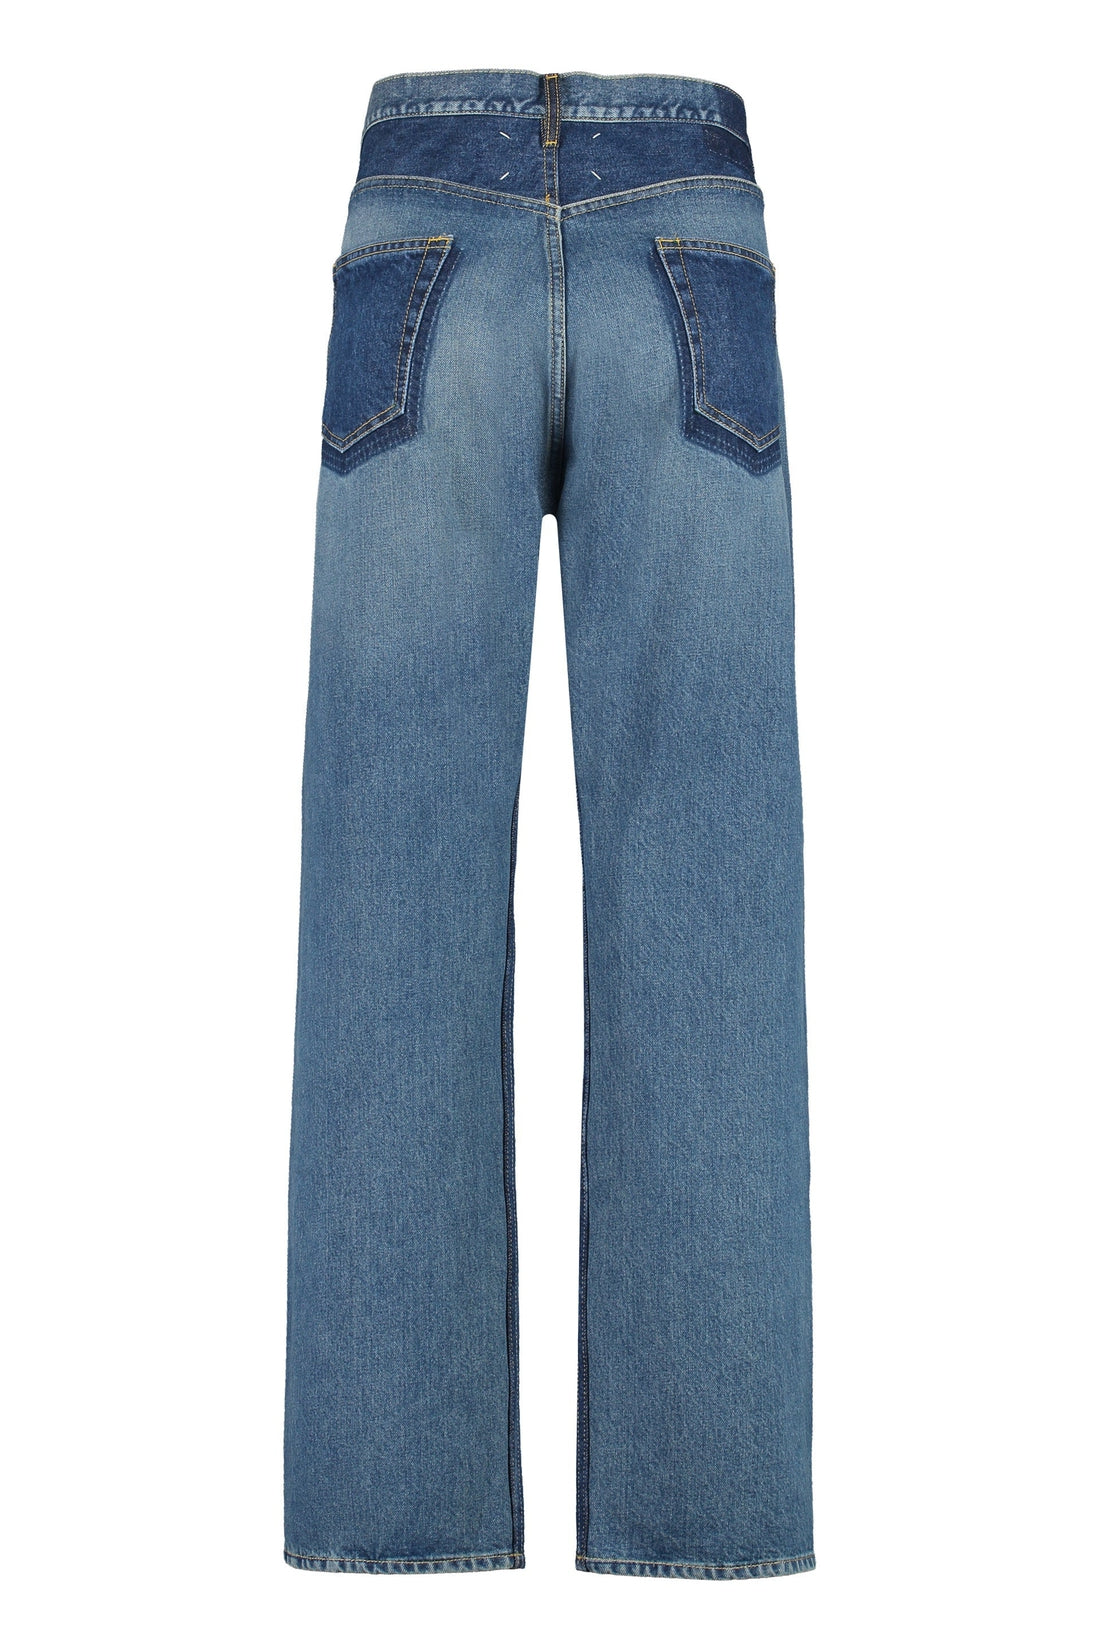 Maison Margiela-OUTLET-SALE-Washed denim jeans-ARCHIVIST